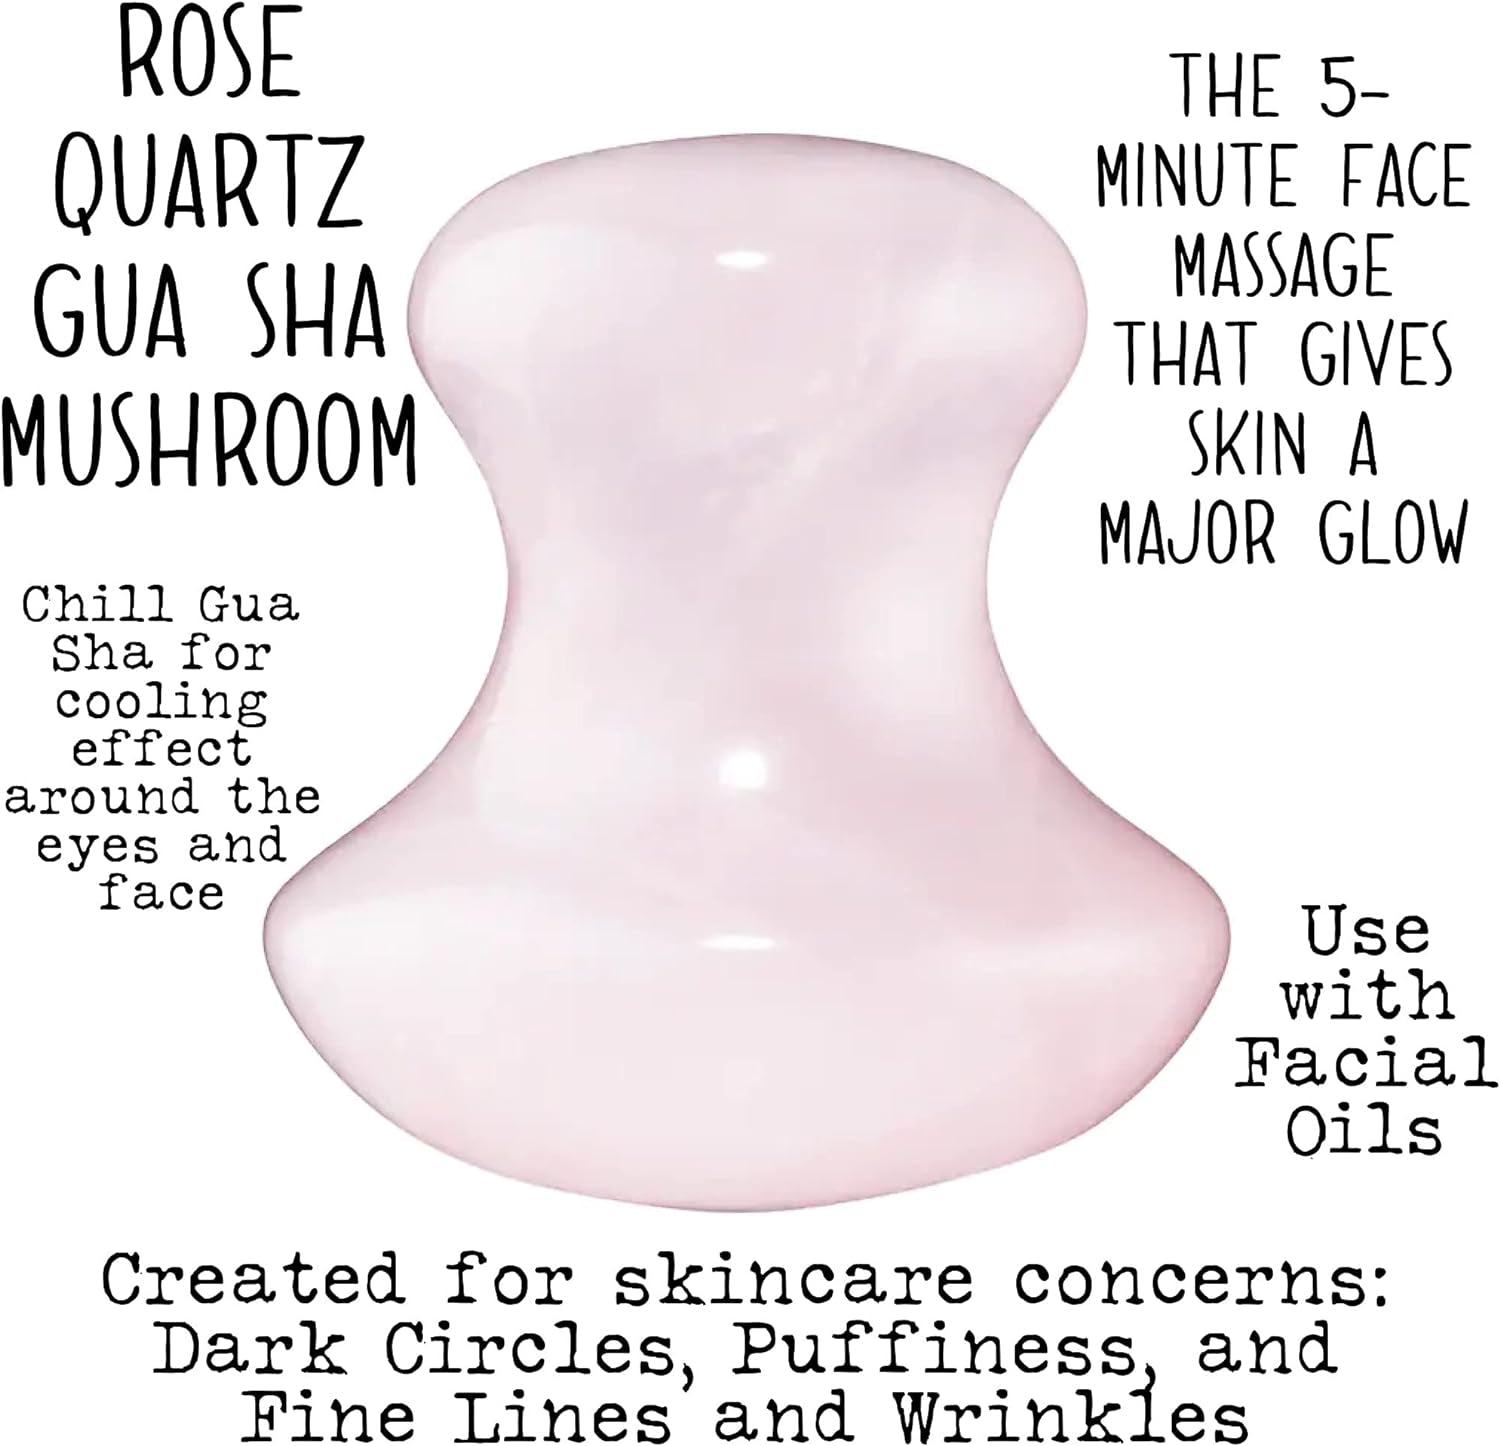 100% Rose Quartz Gua Sha Mushroom Set